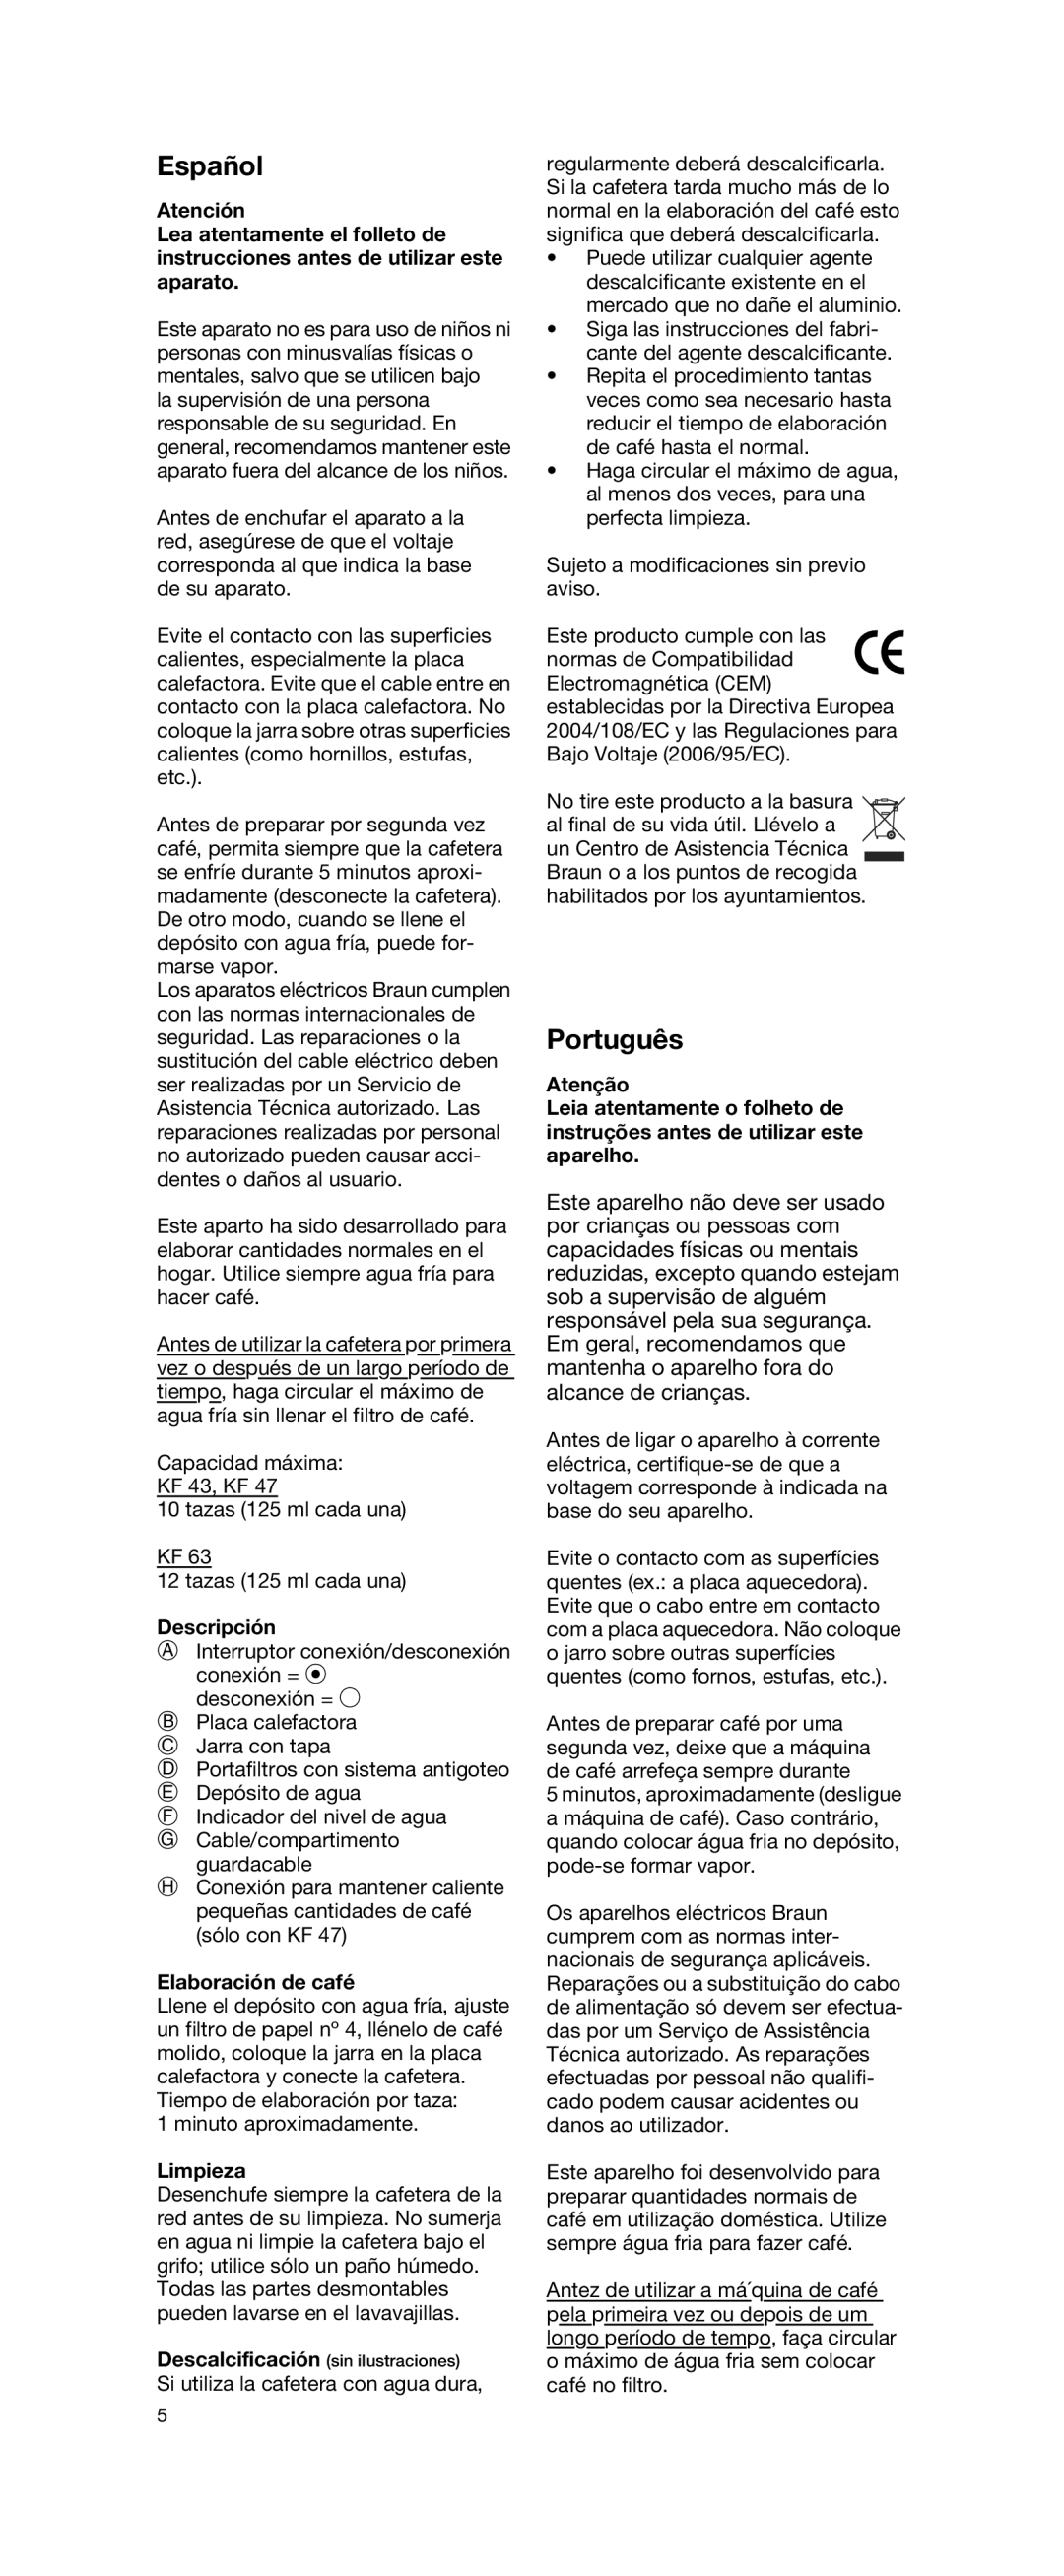 Braun KF 63, KF 47, KF 43 manual Español, Português, Atención, Descripción, Elaboración de café, Limpieza, Atenção 